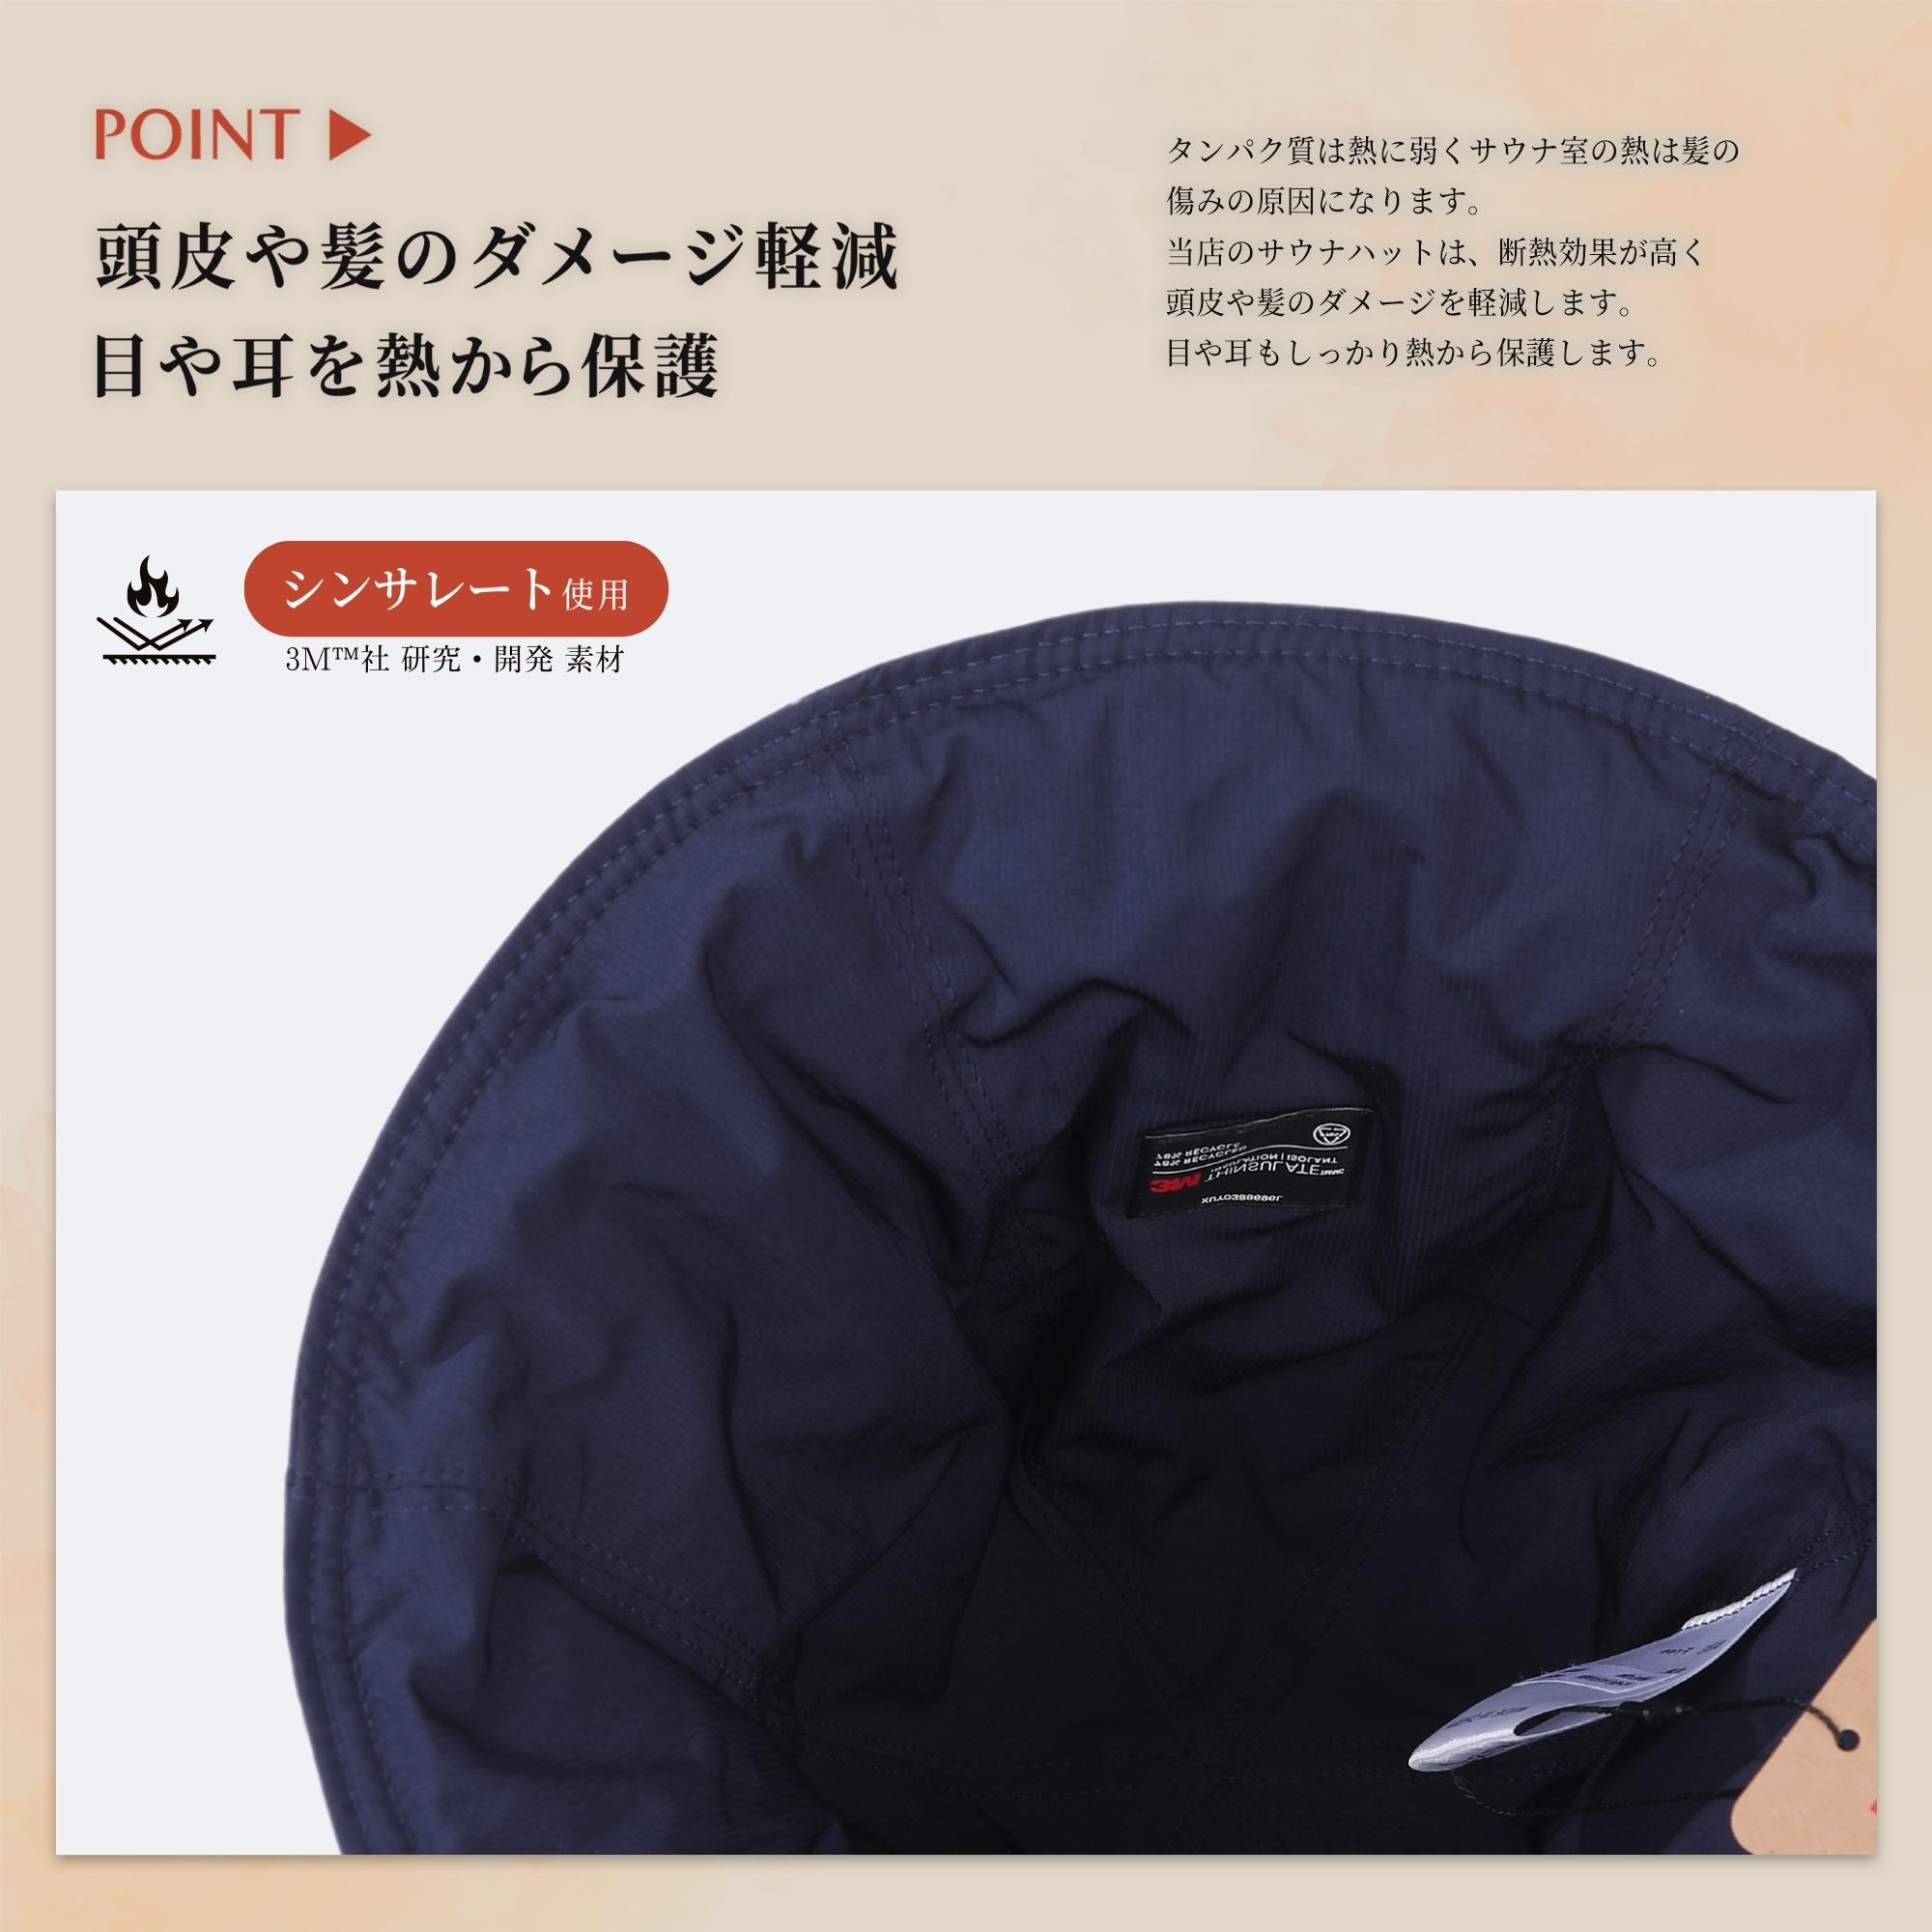 Totonoi Japan サウナハット ナイロン メンズ レディース 洗える サウナ ハット シンサレート 洗濯可能 ブラック カーキ ネイビー  ホワイト バス用品